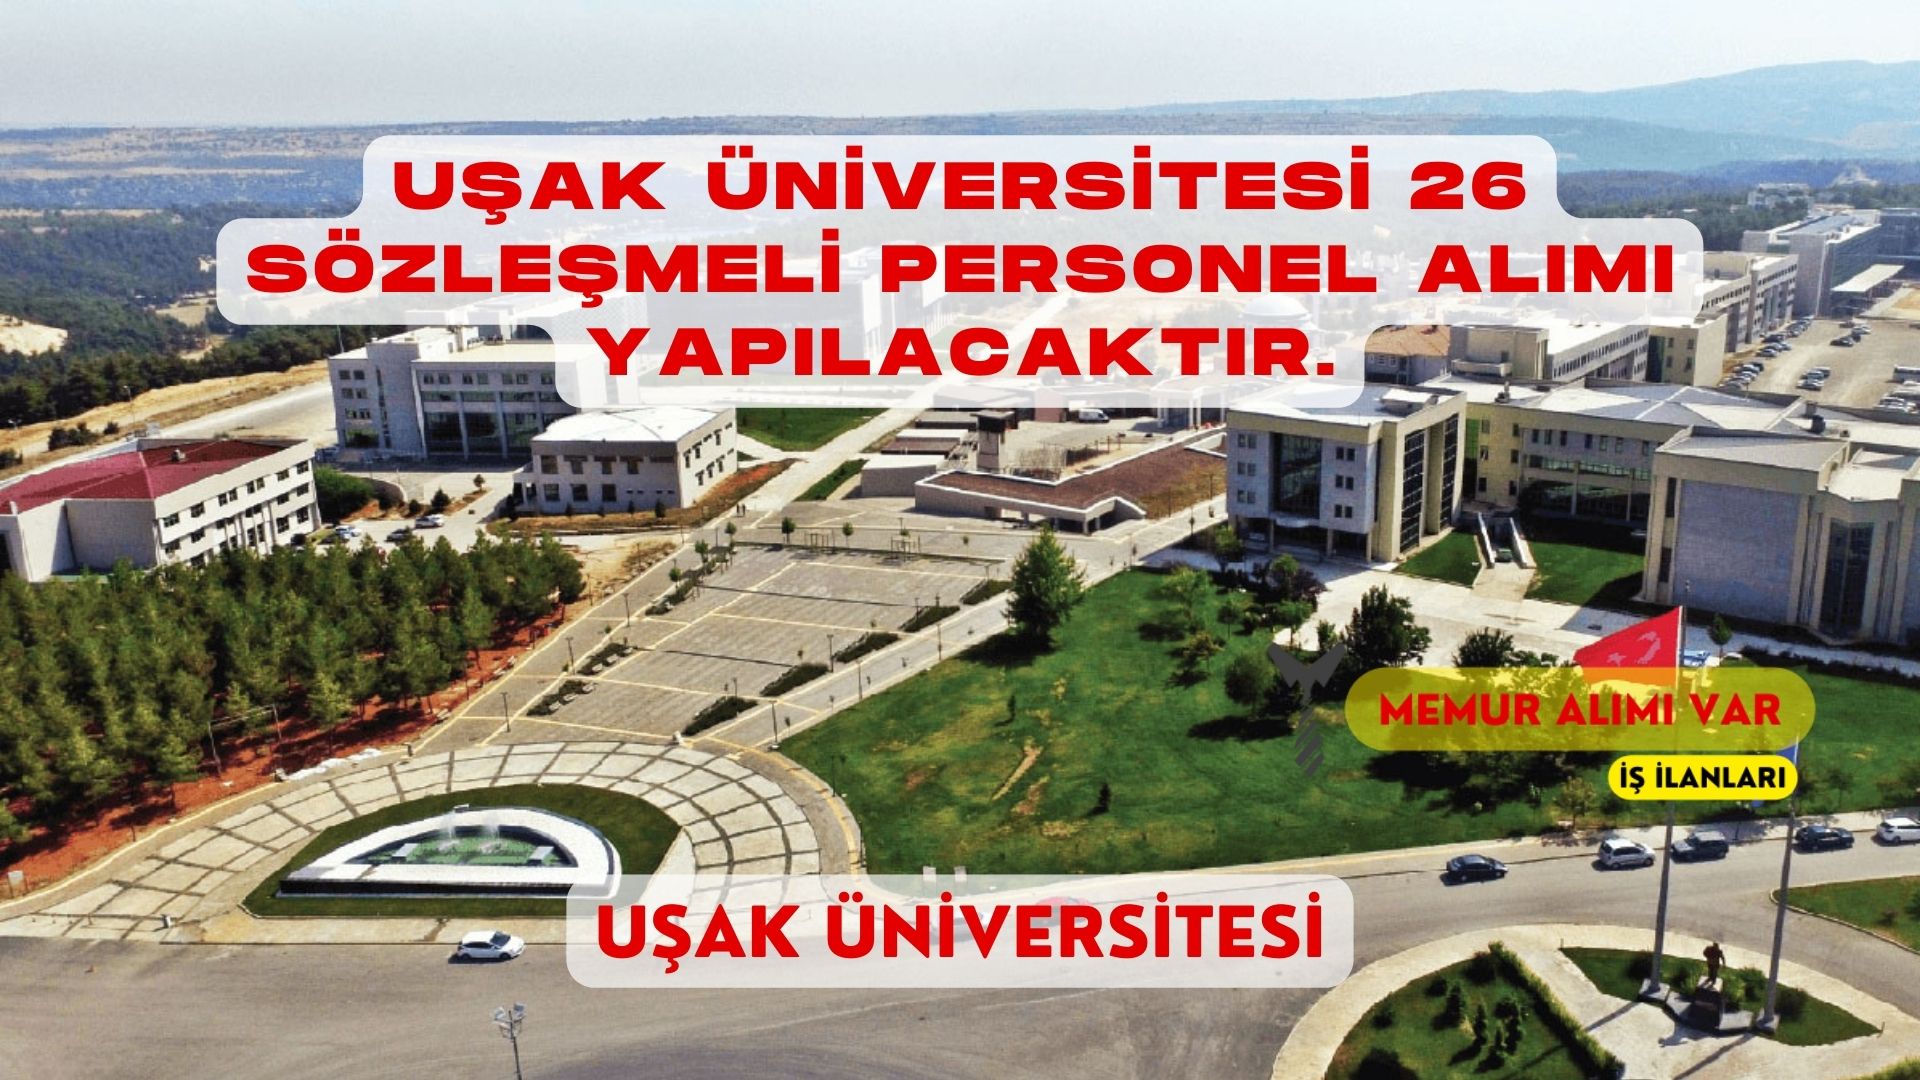 Uşak Üniversitesi 26 Personel Alımı: İş İlanı Detayları